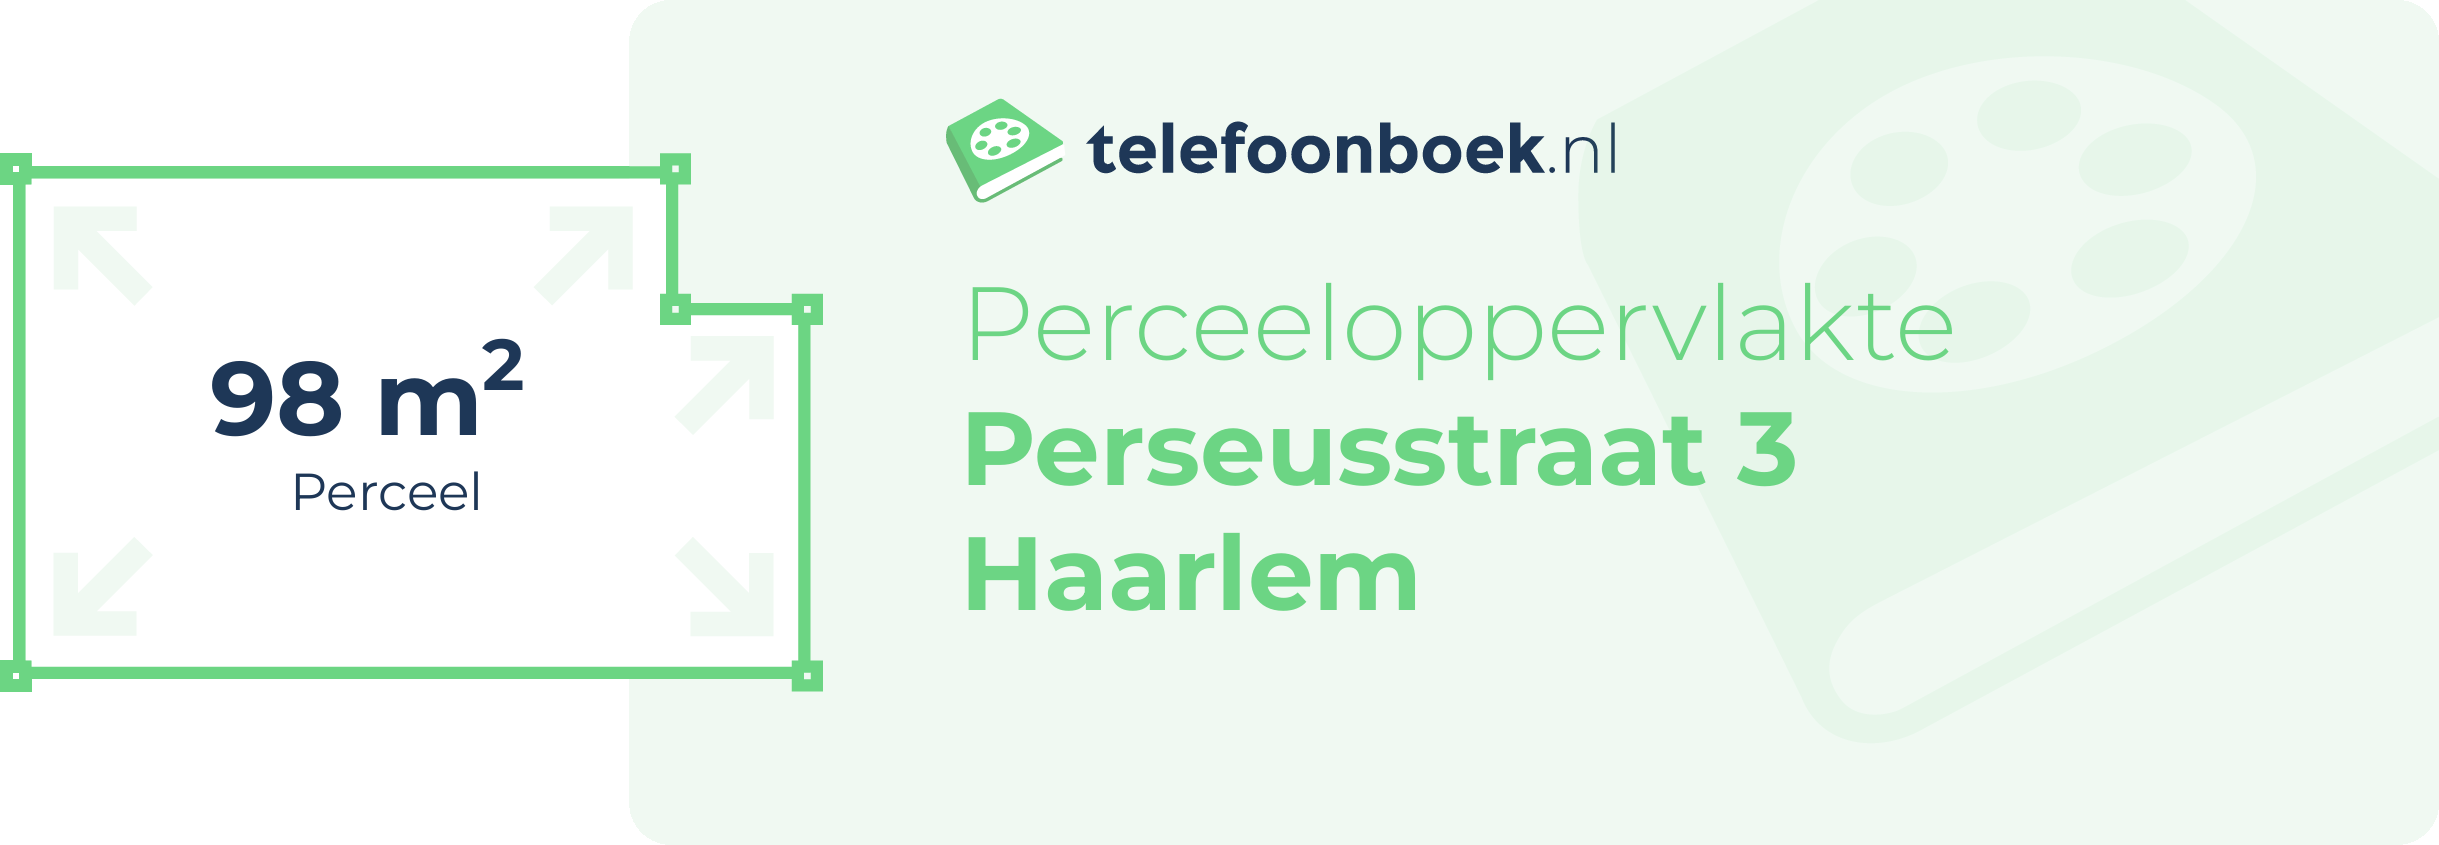 Perceeloppervlakte Perseusstraat 3 Haarlem